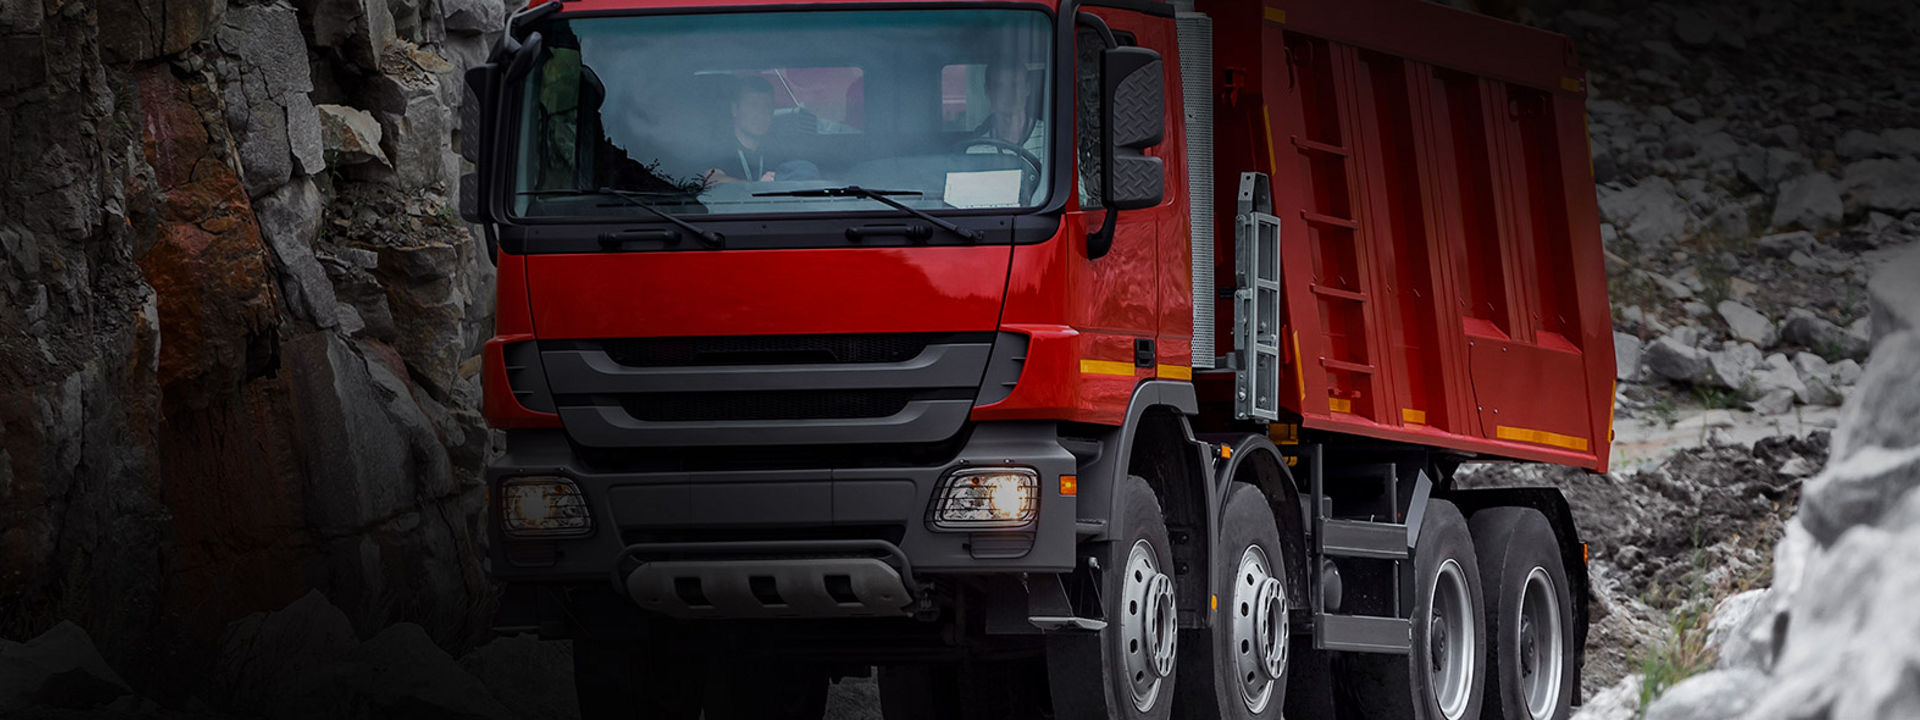 Deze afbeelding toont de voorkant van een truck op een bouwplaats met zware On-/Off-road-banden van Bridgestone.